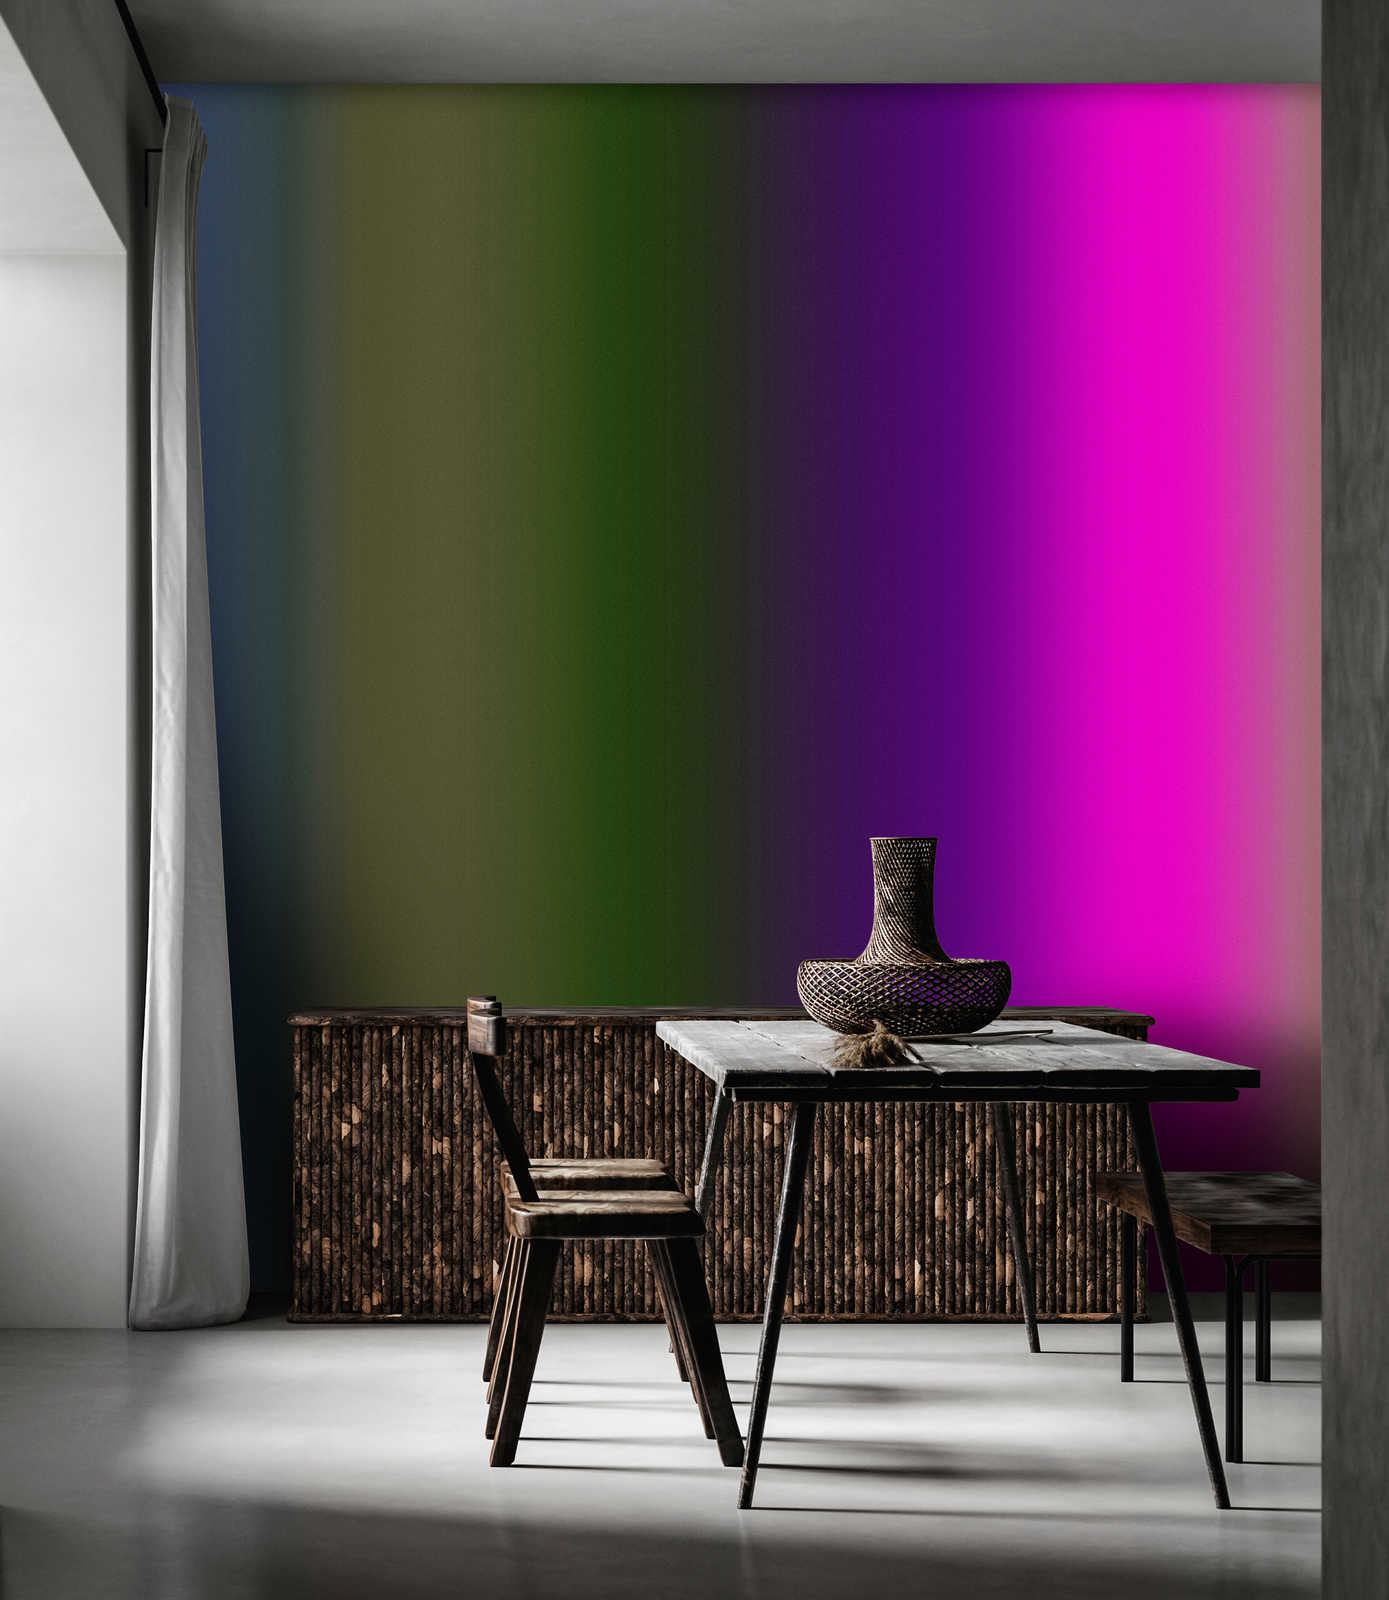             Over the Rainbow 3 - Papel pintado espectro colorido con rosa neón
        